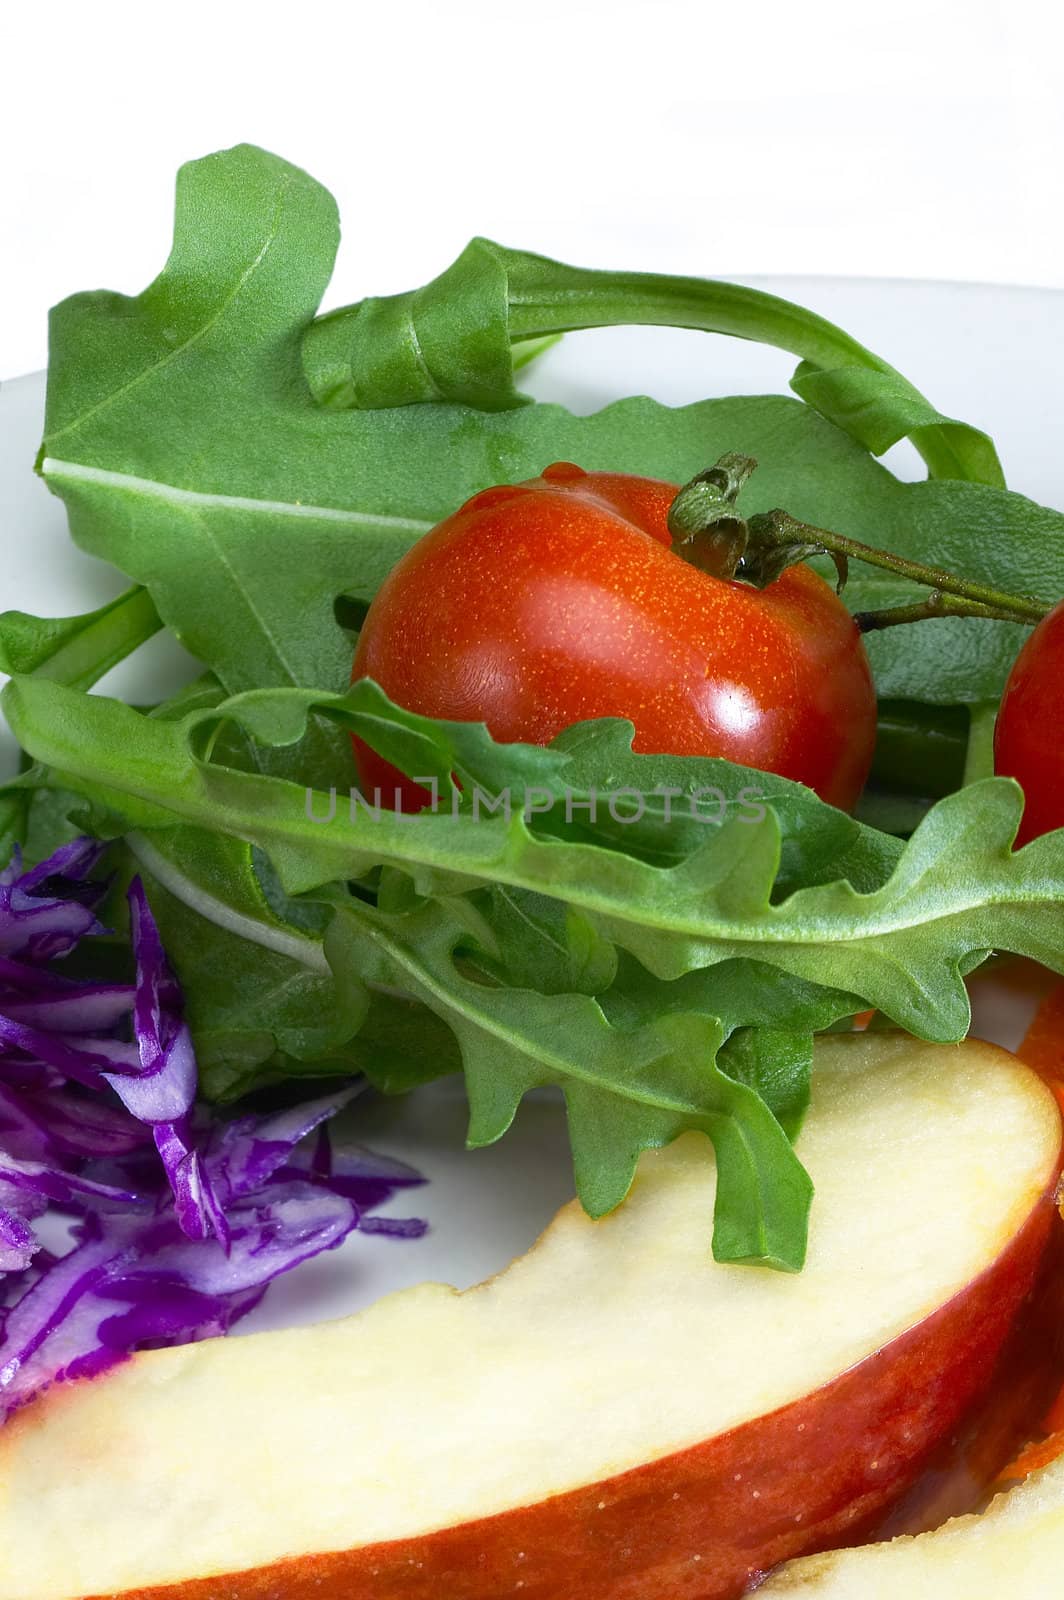 salad ingredient on a plate by keko64